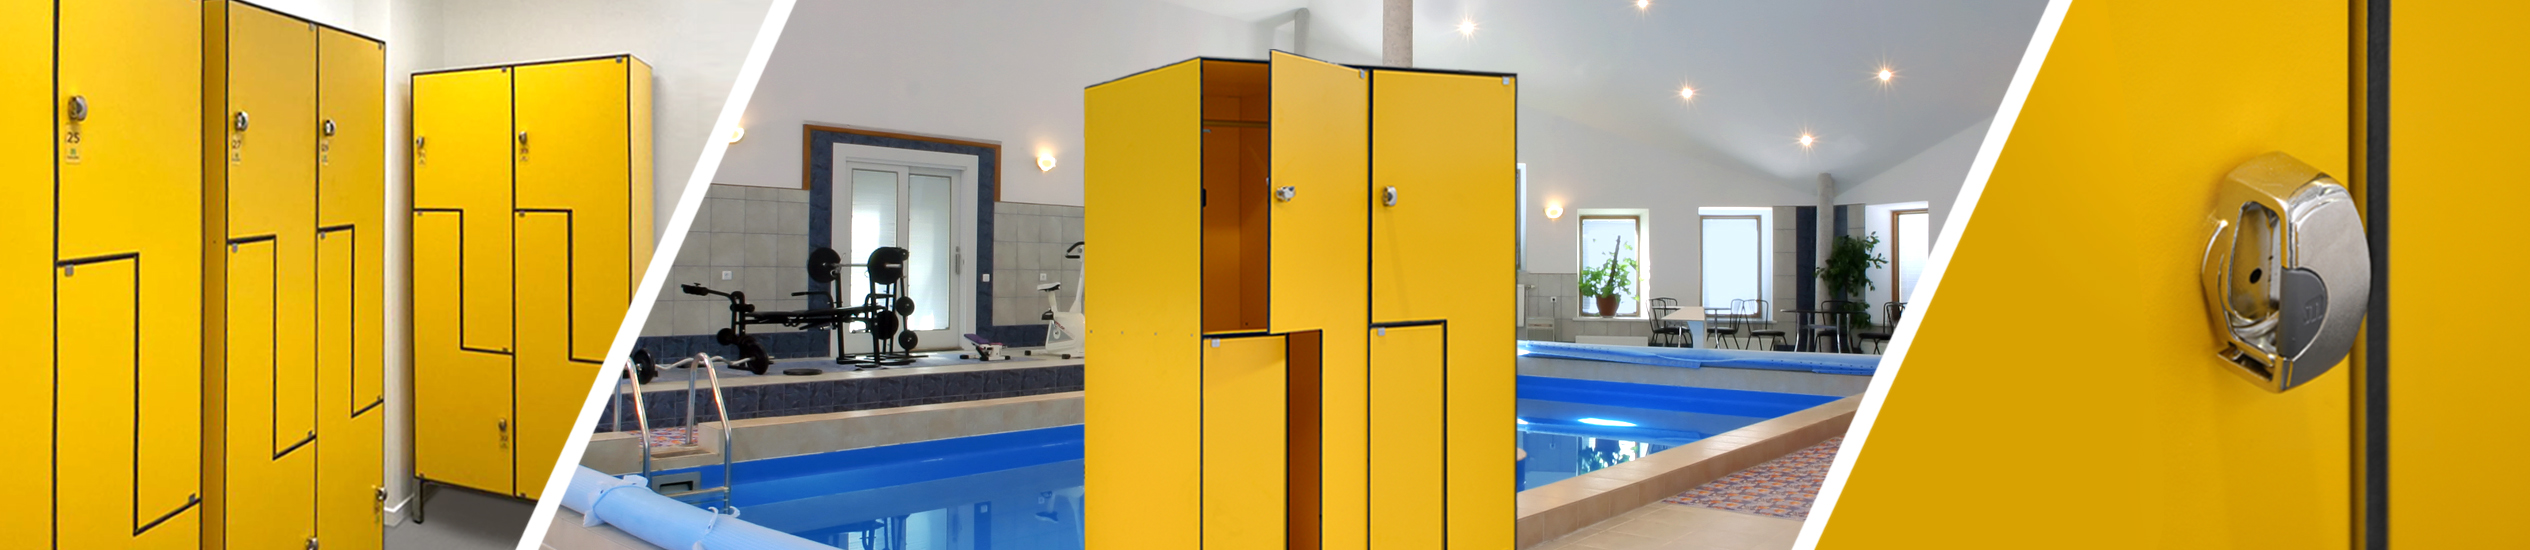 Produzione, vendita e montaggio di arredi su misura in HPL: armadietti, lockers per spogliatoi, pareti divisorie modulari e moduli bagni